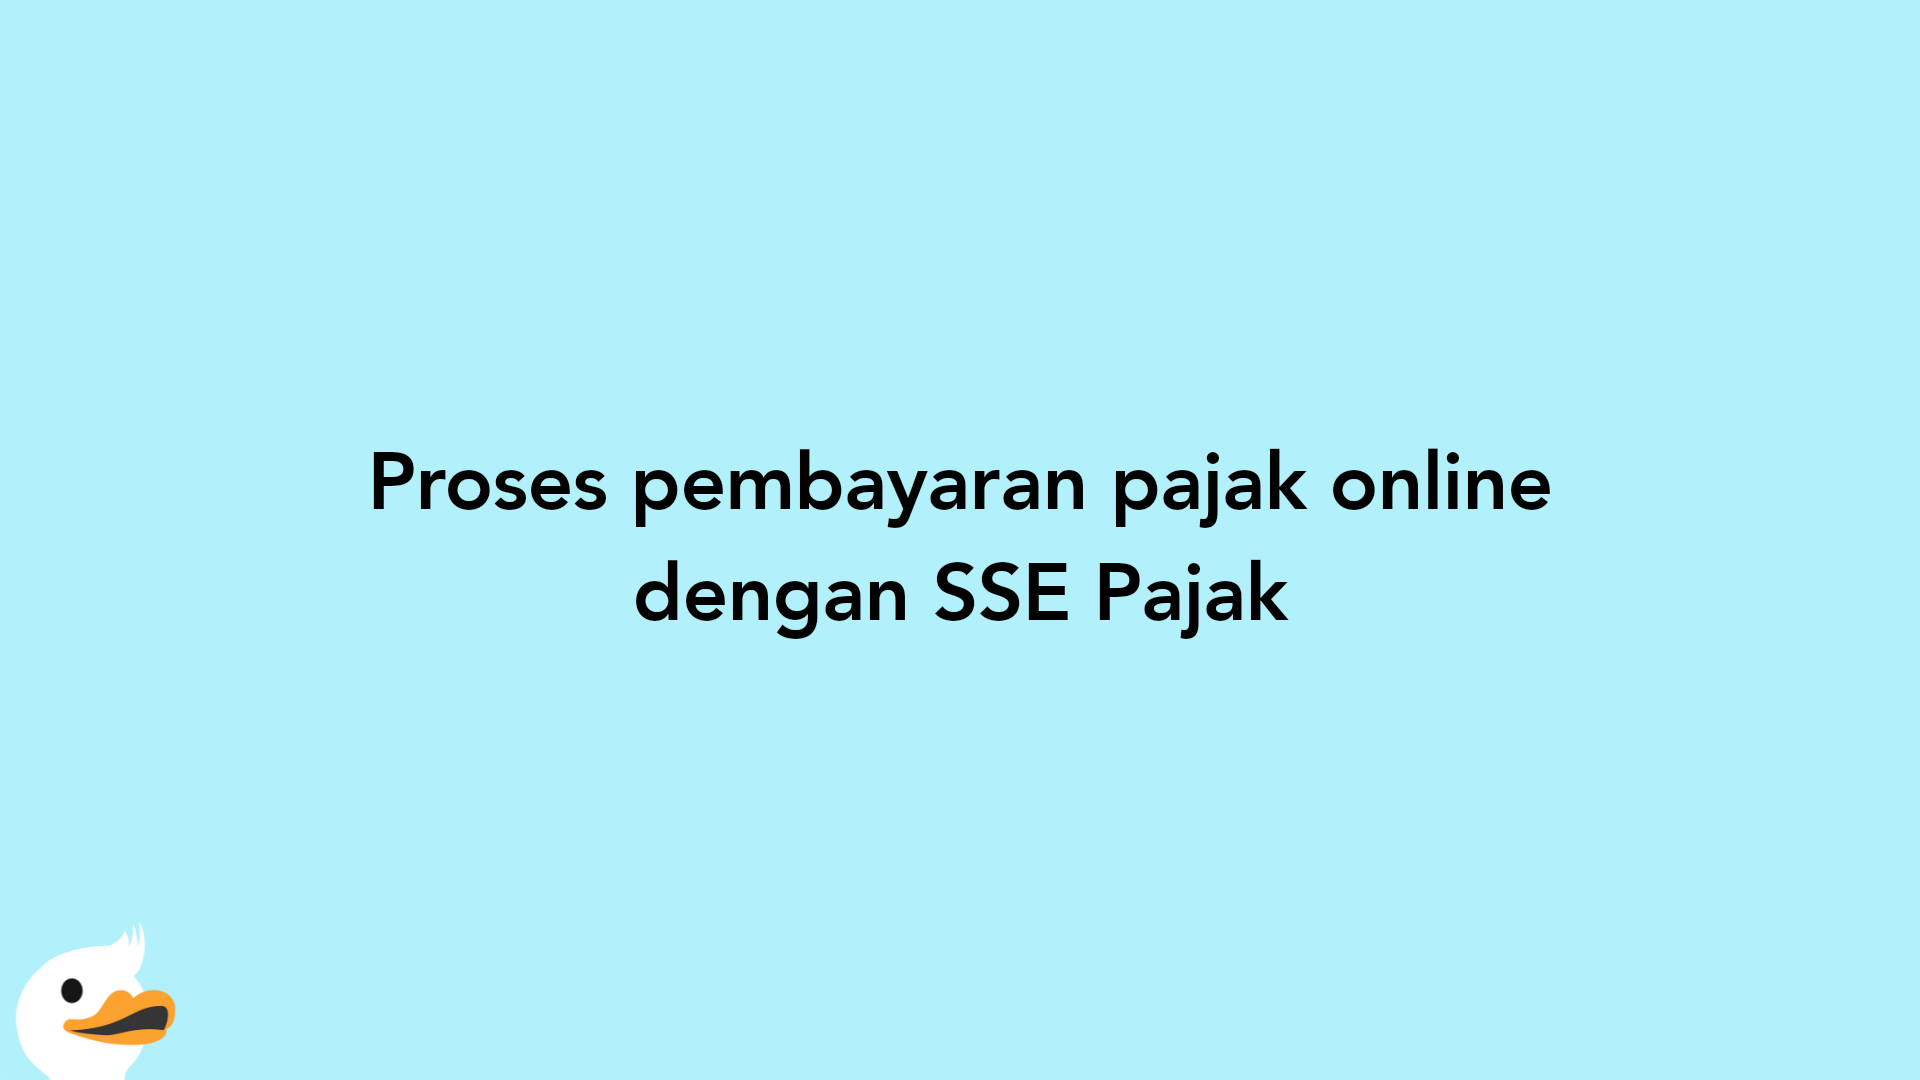 Proses pembayaran pajak online dengan SSE Pajak